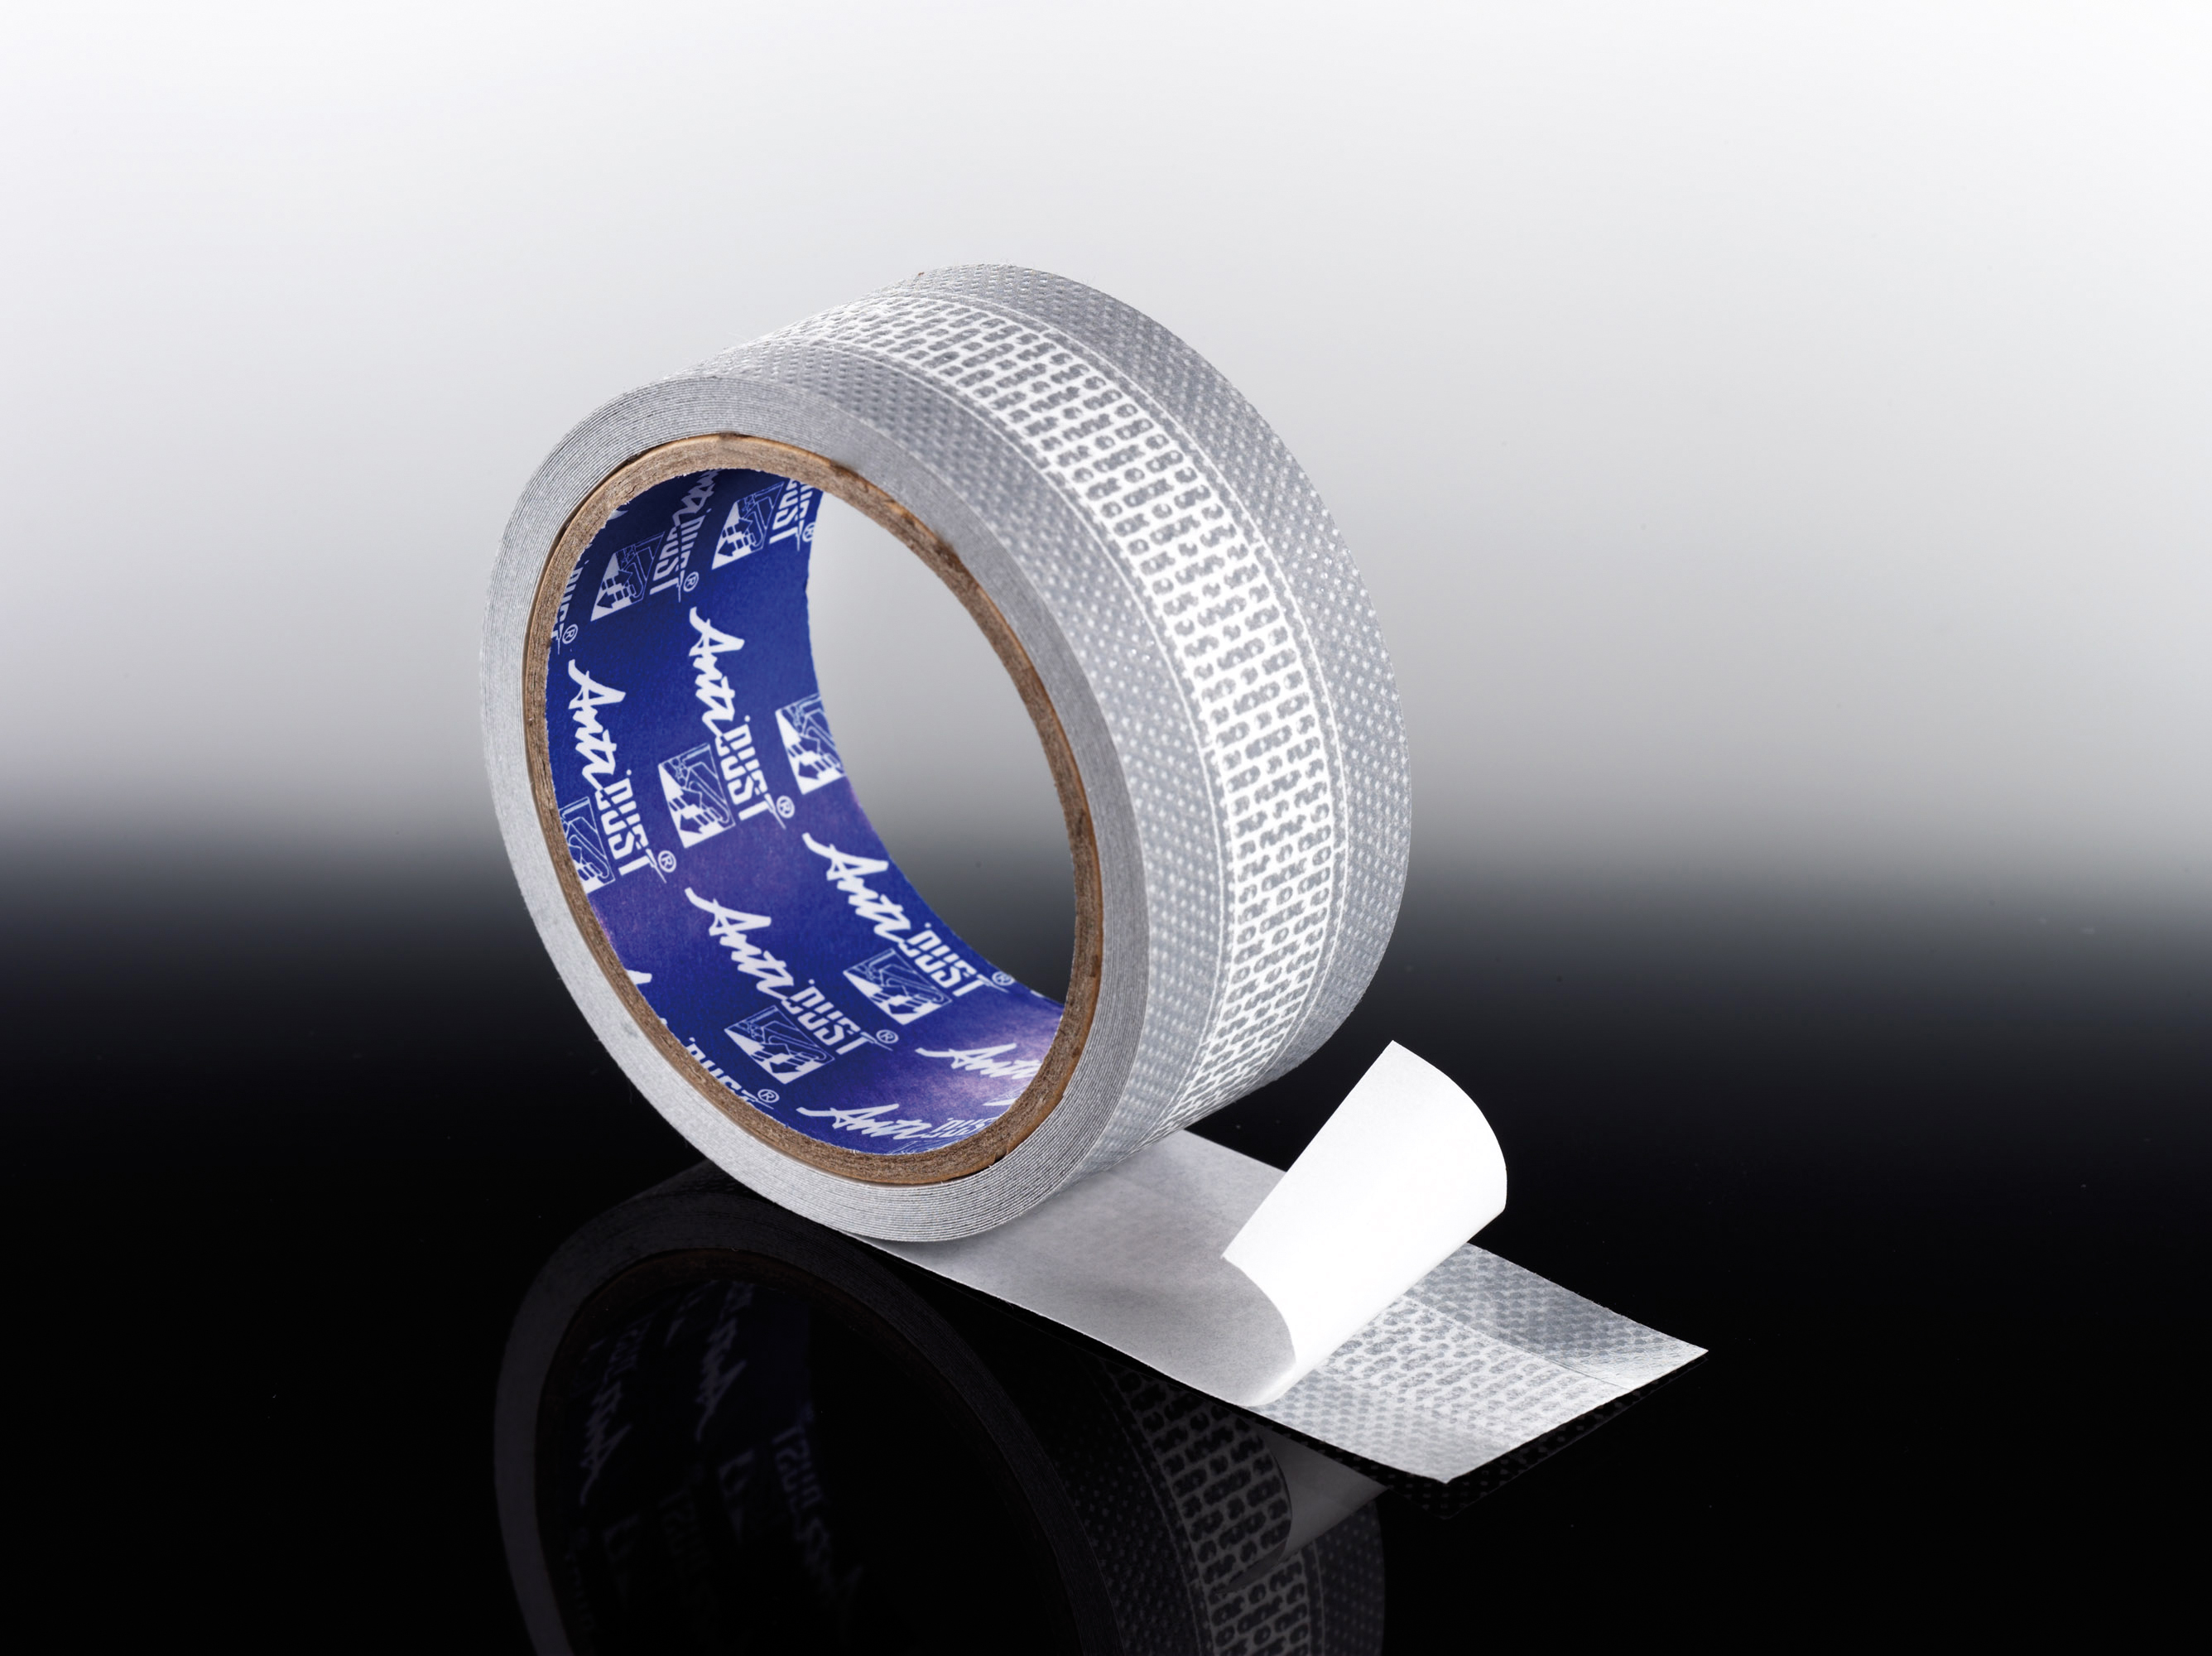 T&J Anti-Dust Tape 42 mm (6,5m Länge)
Abdichtungsband 
für 16 mm Stegplatten